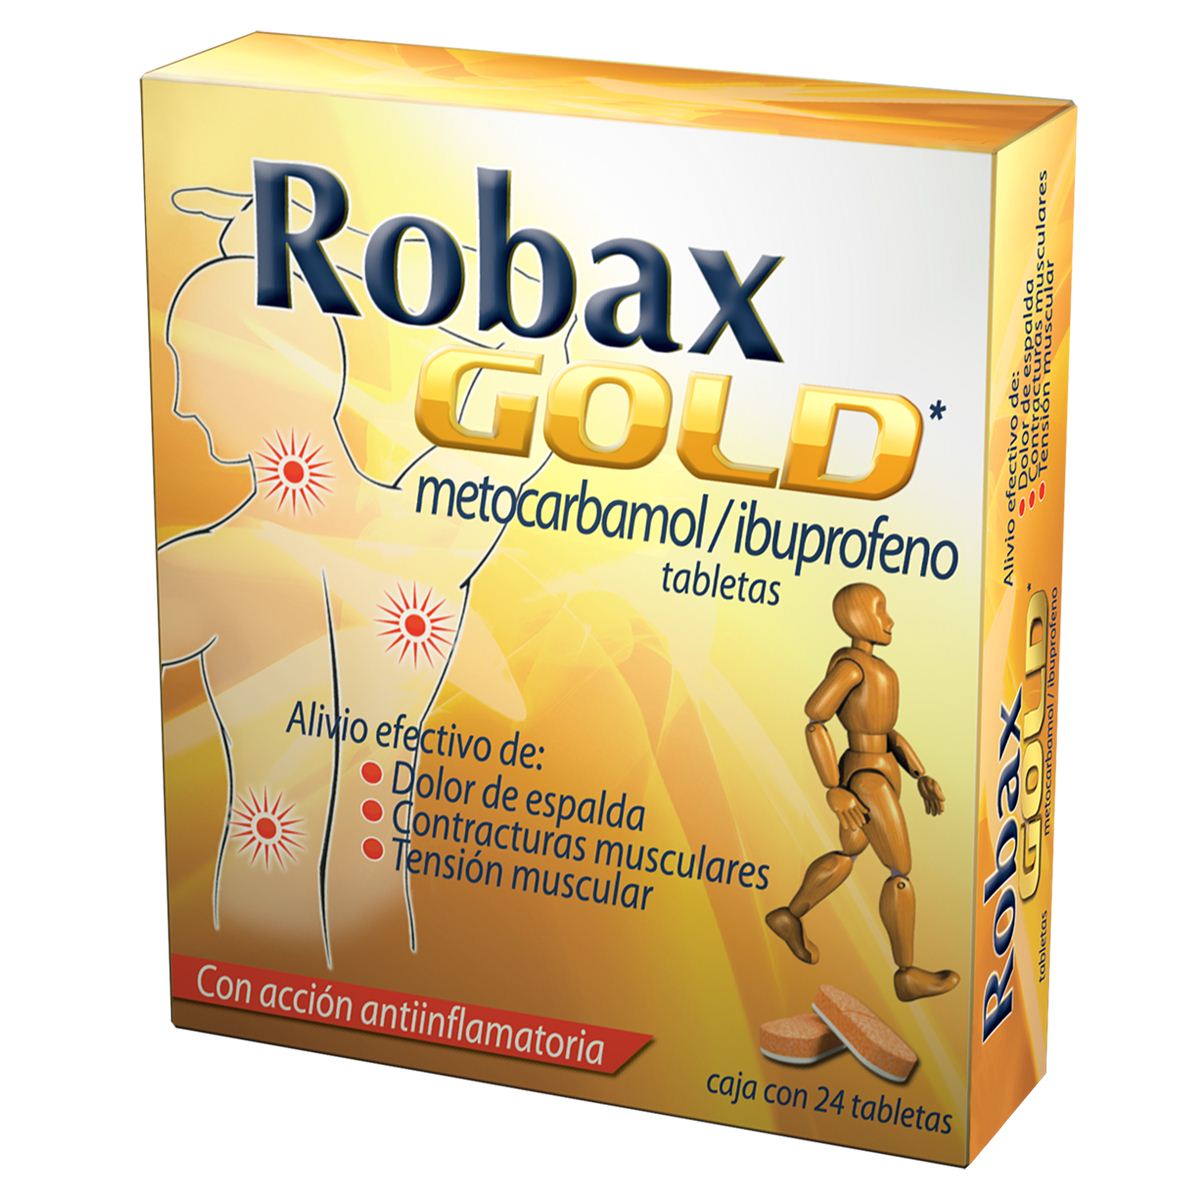 Robax Gold: ¿Qué es y cuánto cuesta?